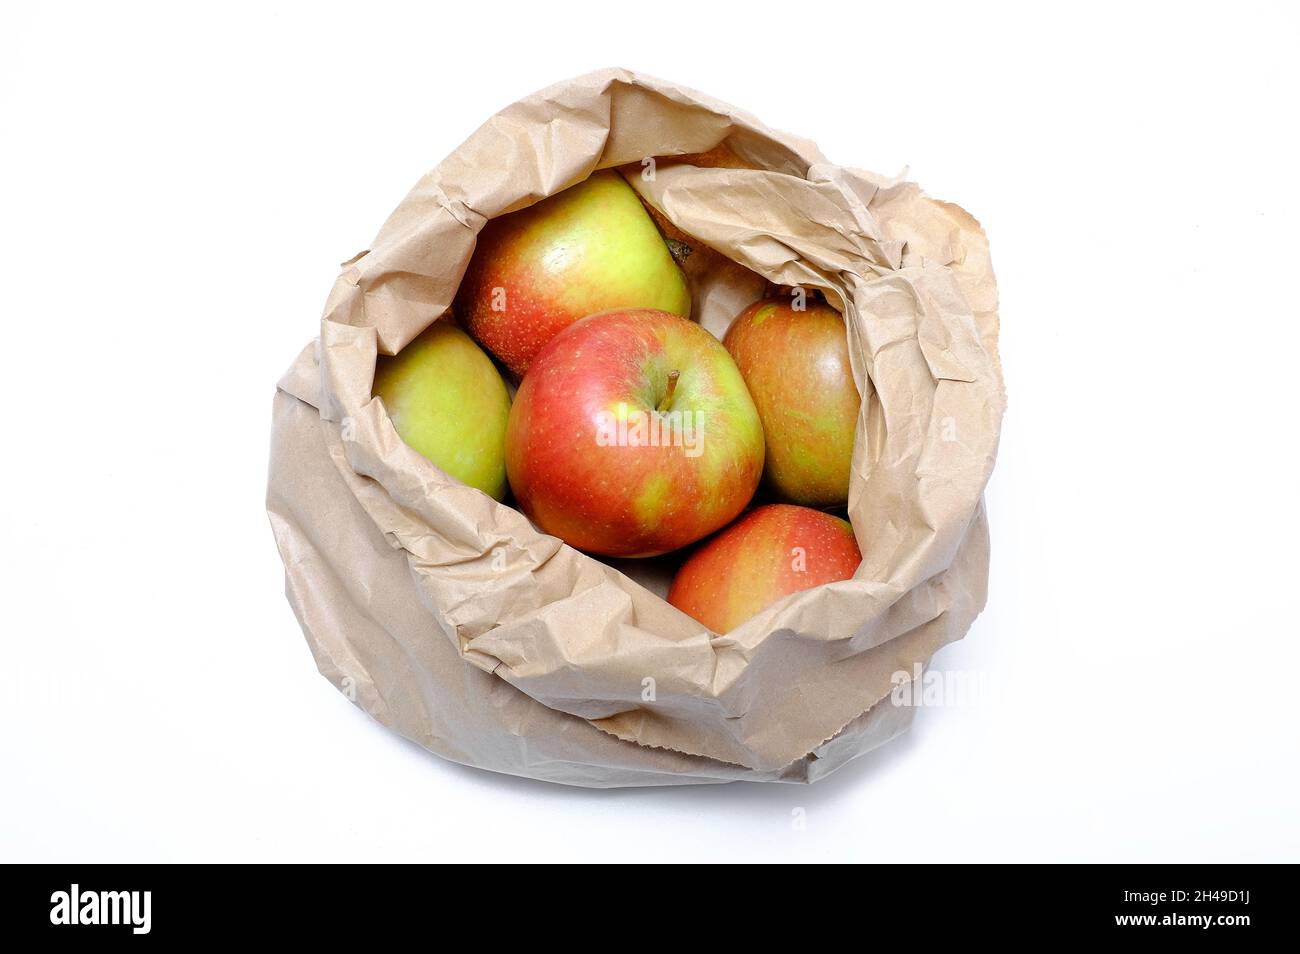 brown paper bag full of braeburn apples on white background, norfolk, england Stock Photo